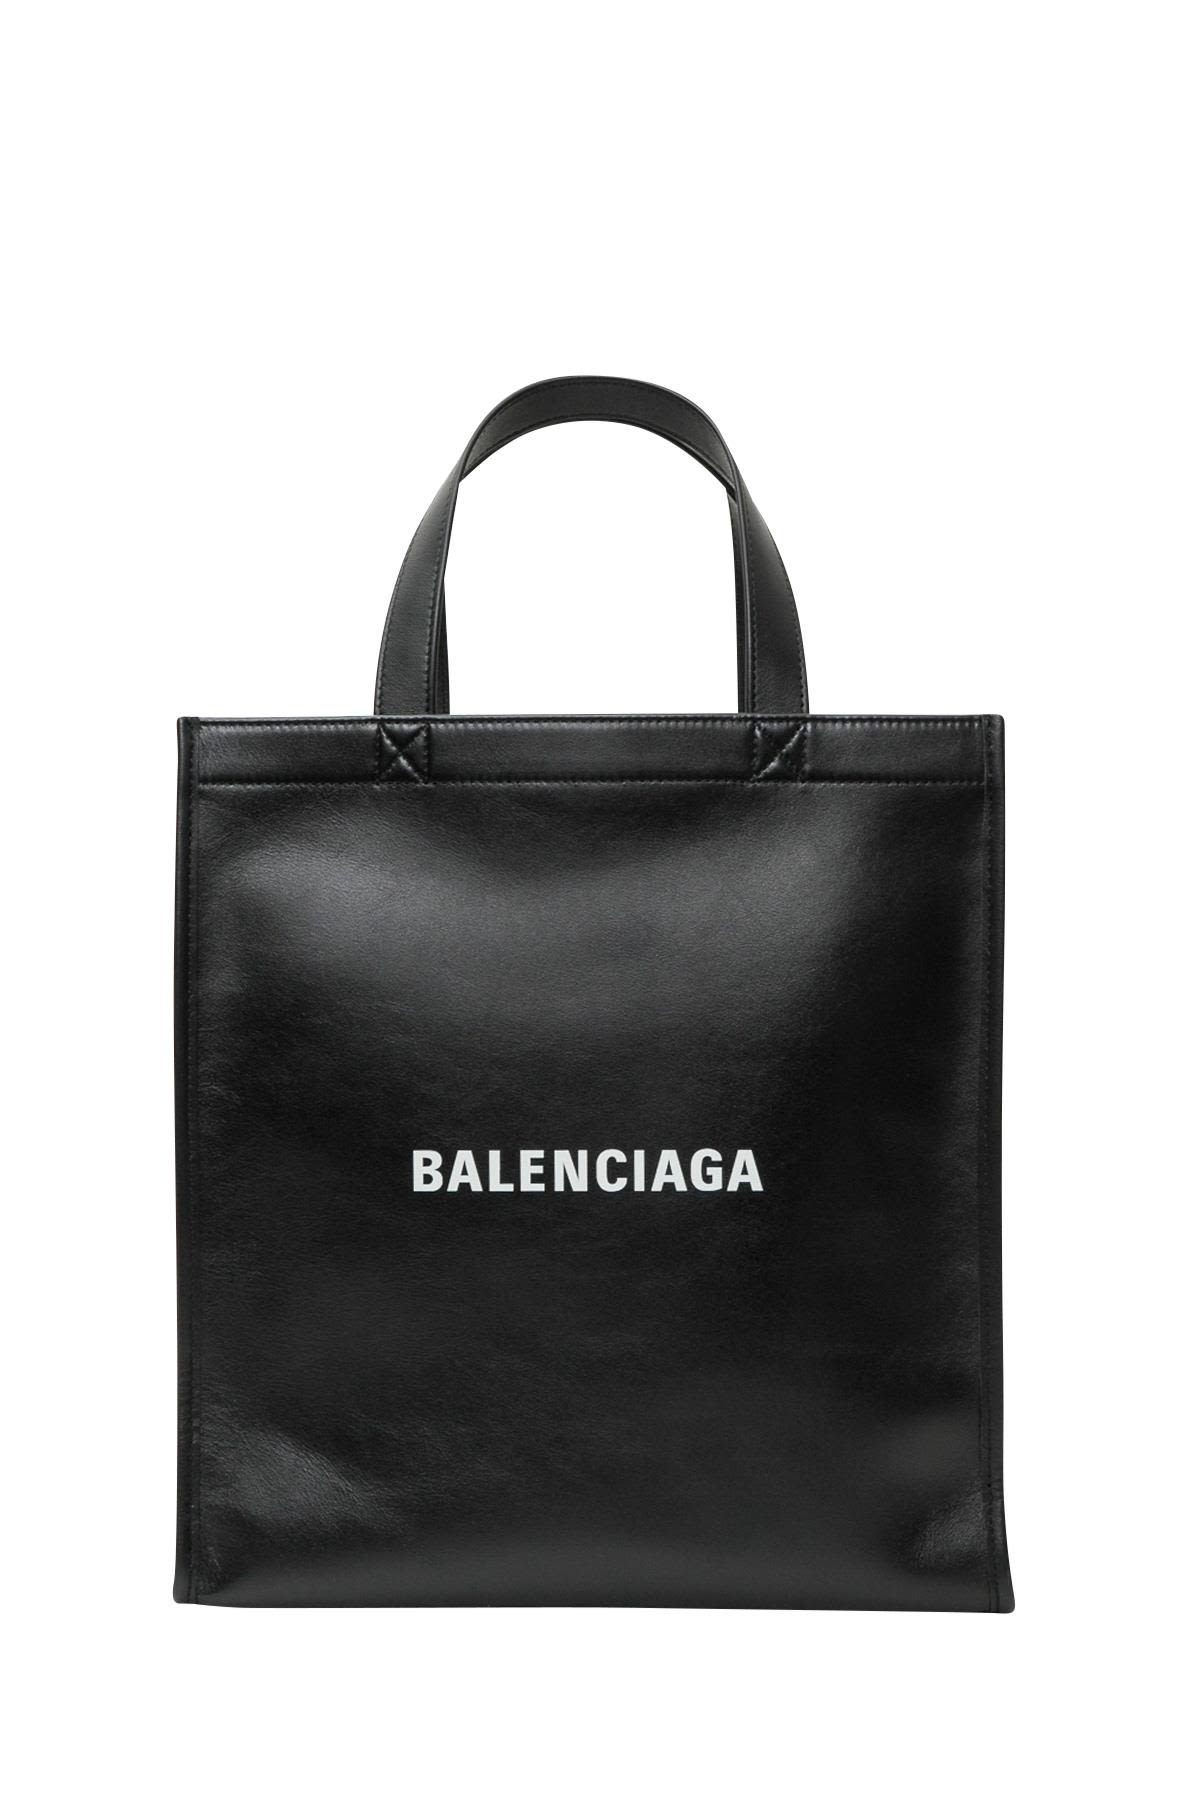 italist | Best price in the market for Balenciaga Balenciaga Small ...